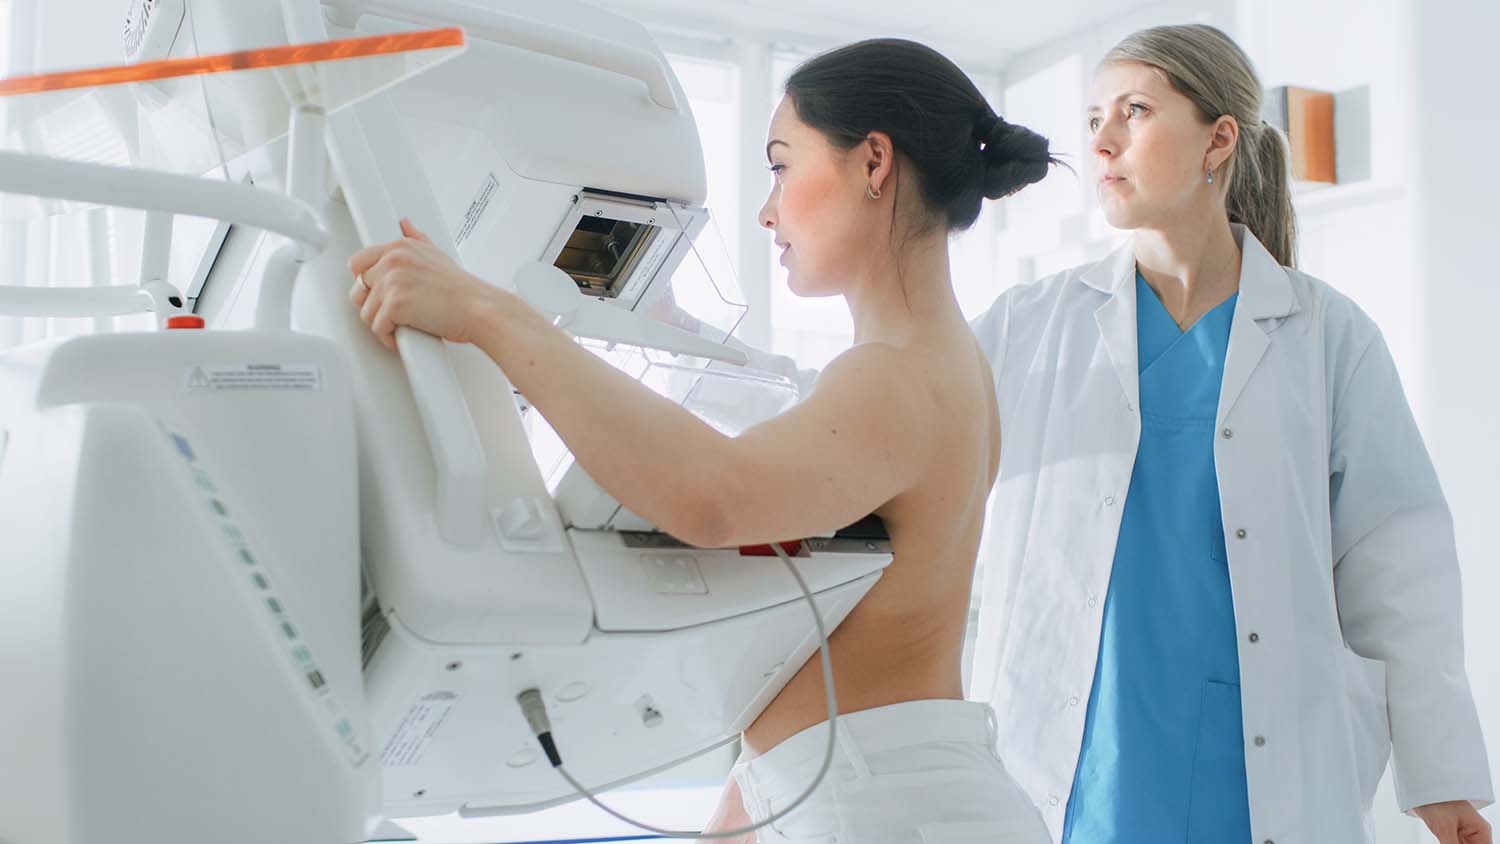 Brustkrebs ist die häufigste Krebserkrankung bei Frauen in Deutschland. Nun werden die Früherkennungsmöglichkeiten ausgeweitet. Auch Frauen ab 70 Jahren sollen künftig kostenfrei zur Mammographie gehen können.